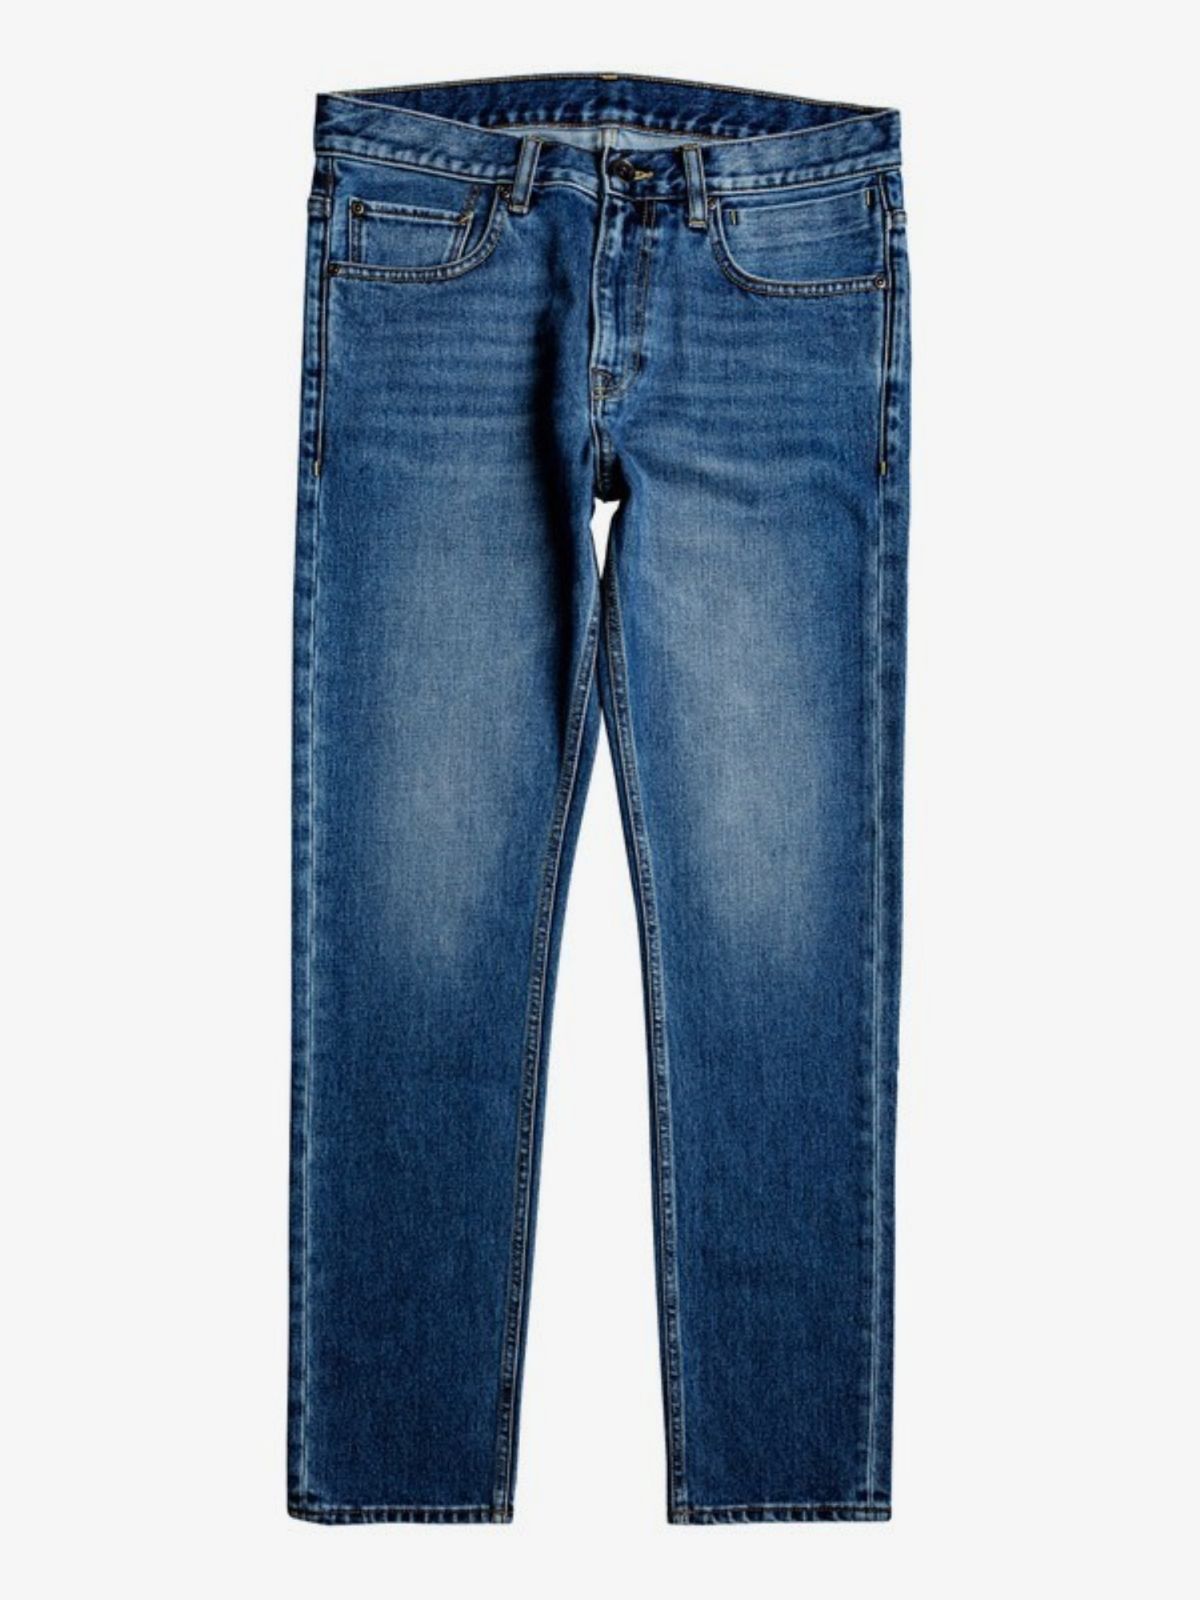  ג'ינס בגזרה ישרה של QUIKSILVER